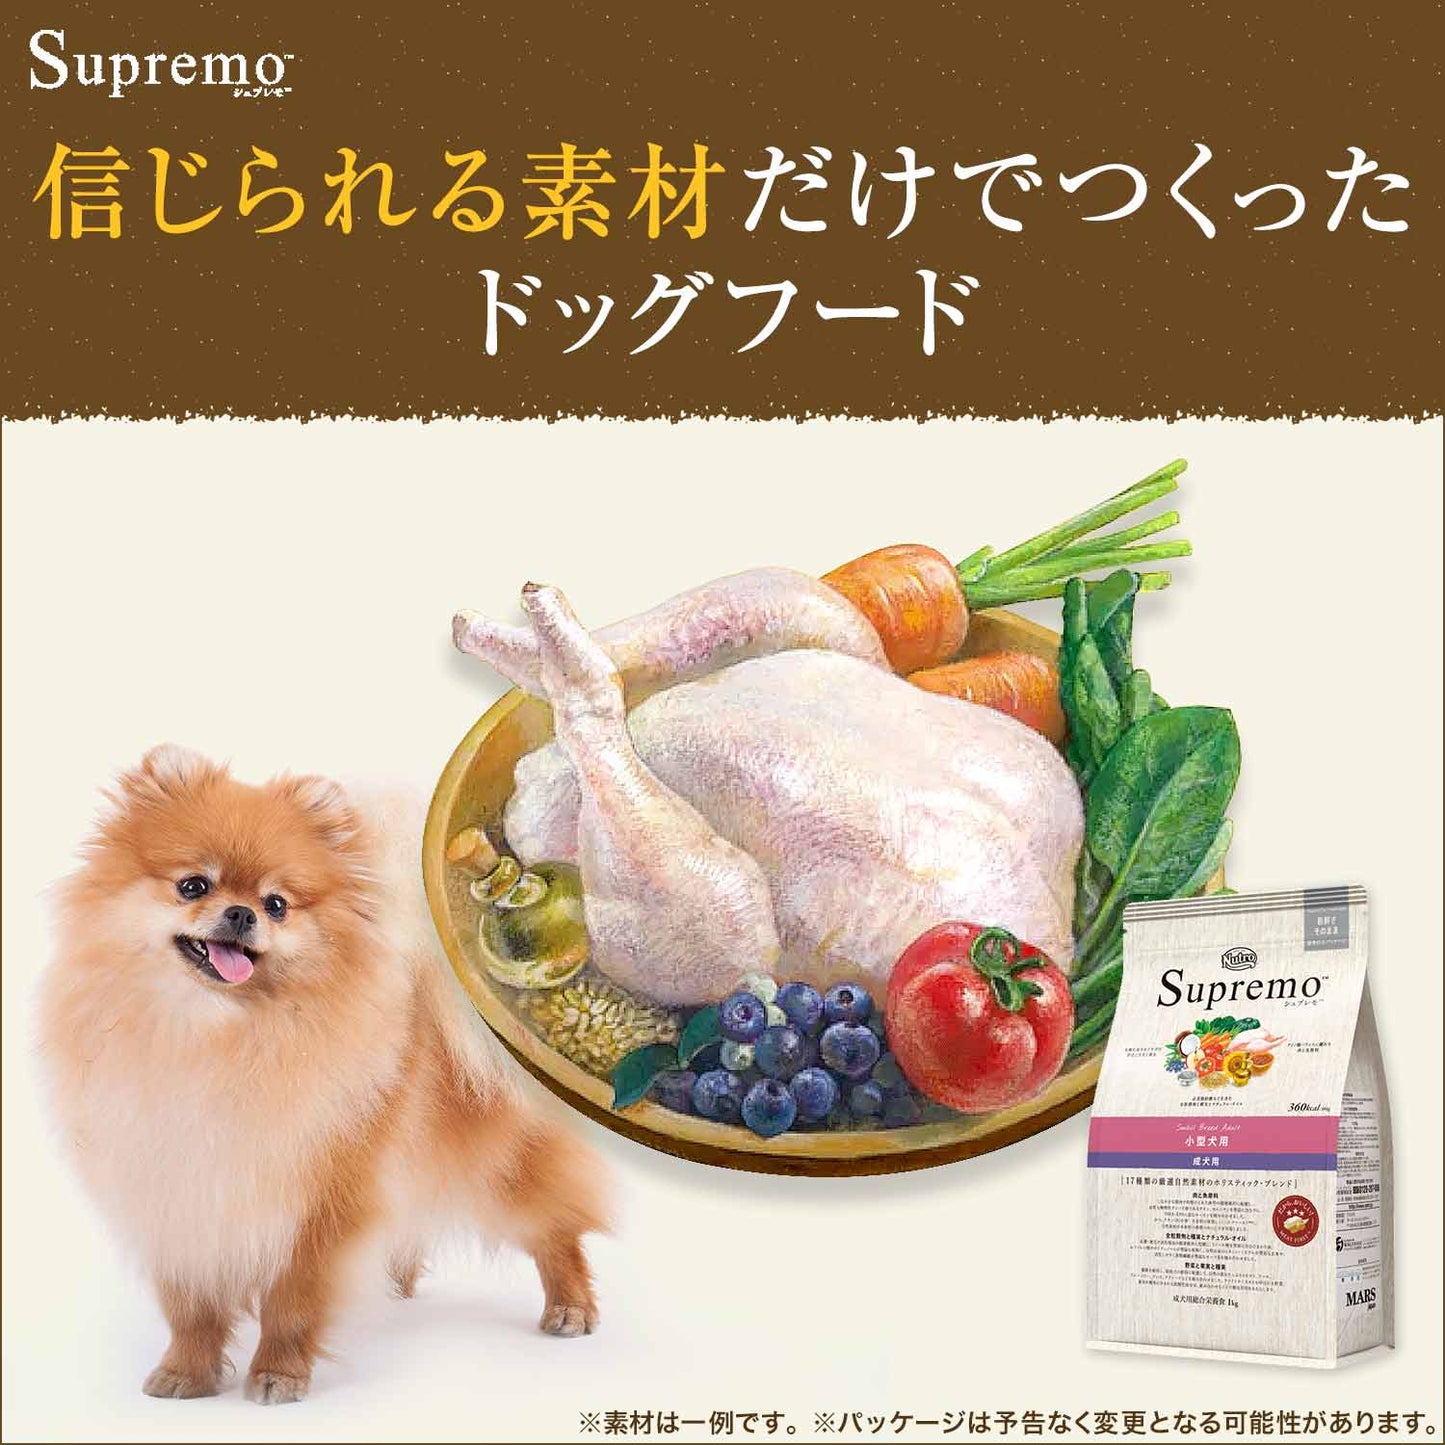 ニュートロ シュプレモ ドッグフード 全犬種 体重管理用 7.5kg 無添加 犬用品 ペット用品 プレミアム 送料無料